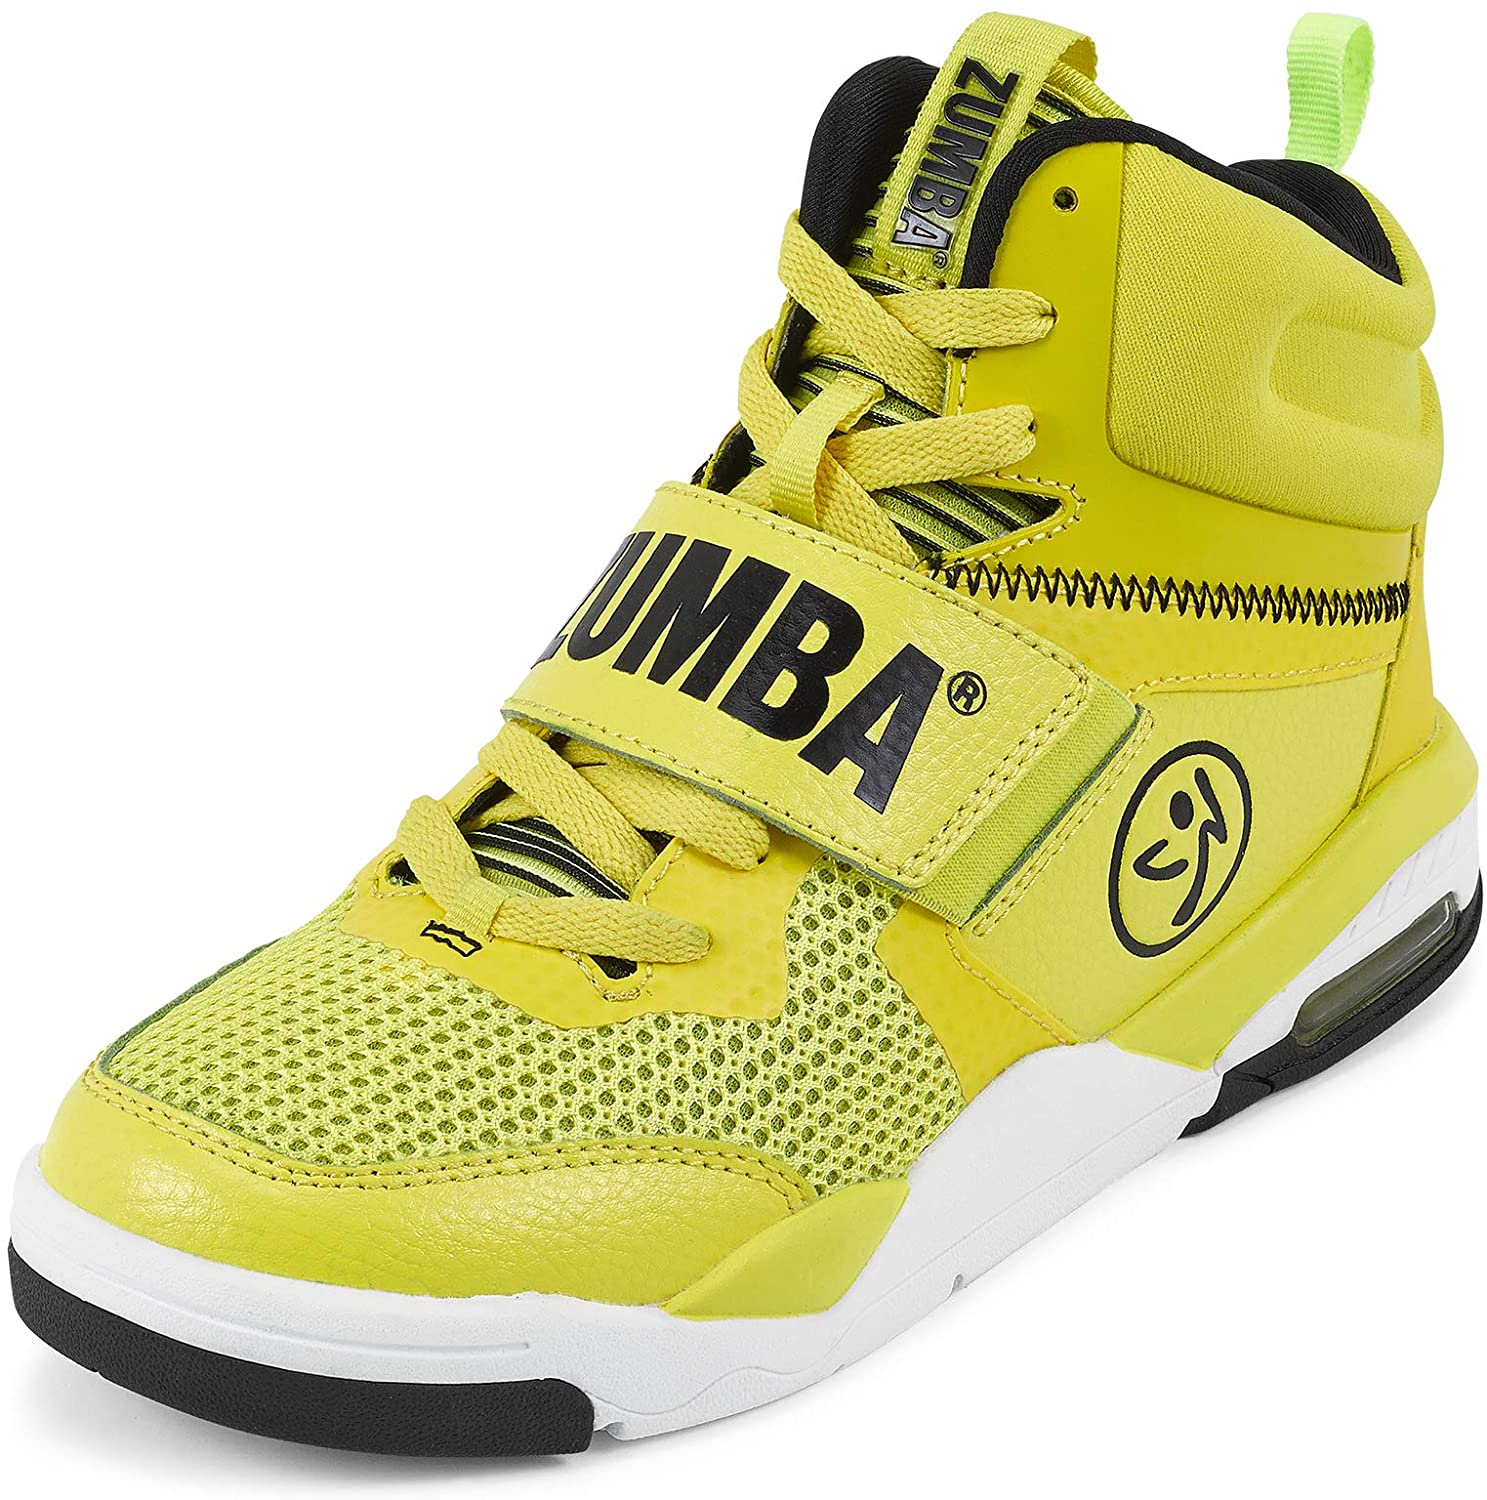 Chaussures Femme Zumba Fitness Zumba Air Classic Sportliche High Top Tanzschuhe Damen Fitness Workout Sneakers